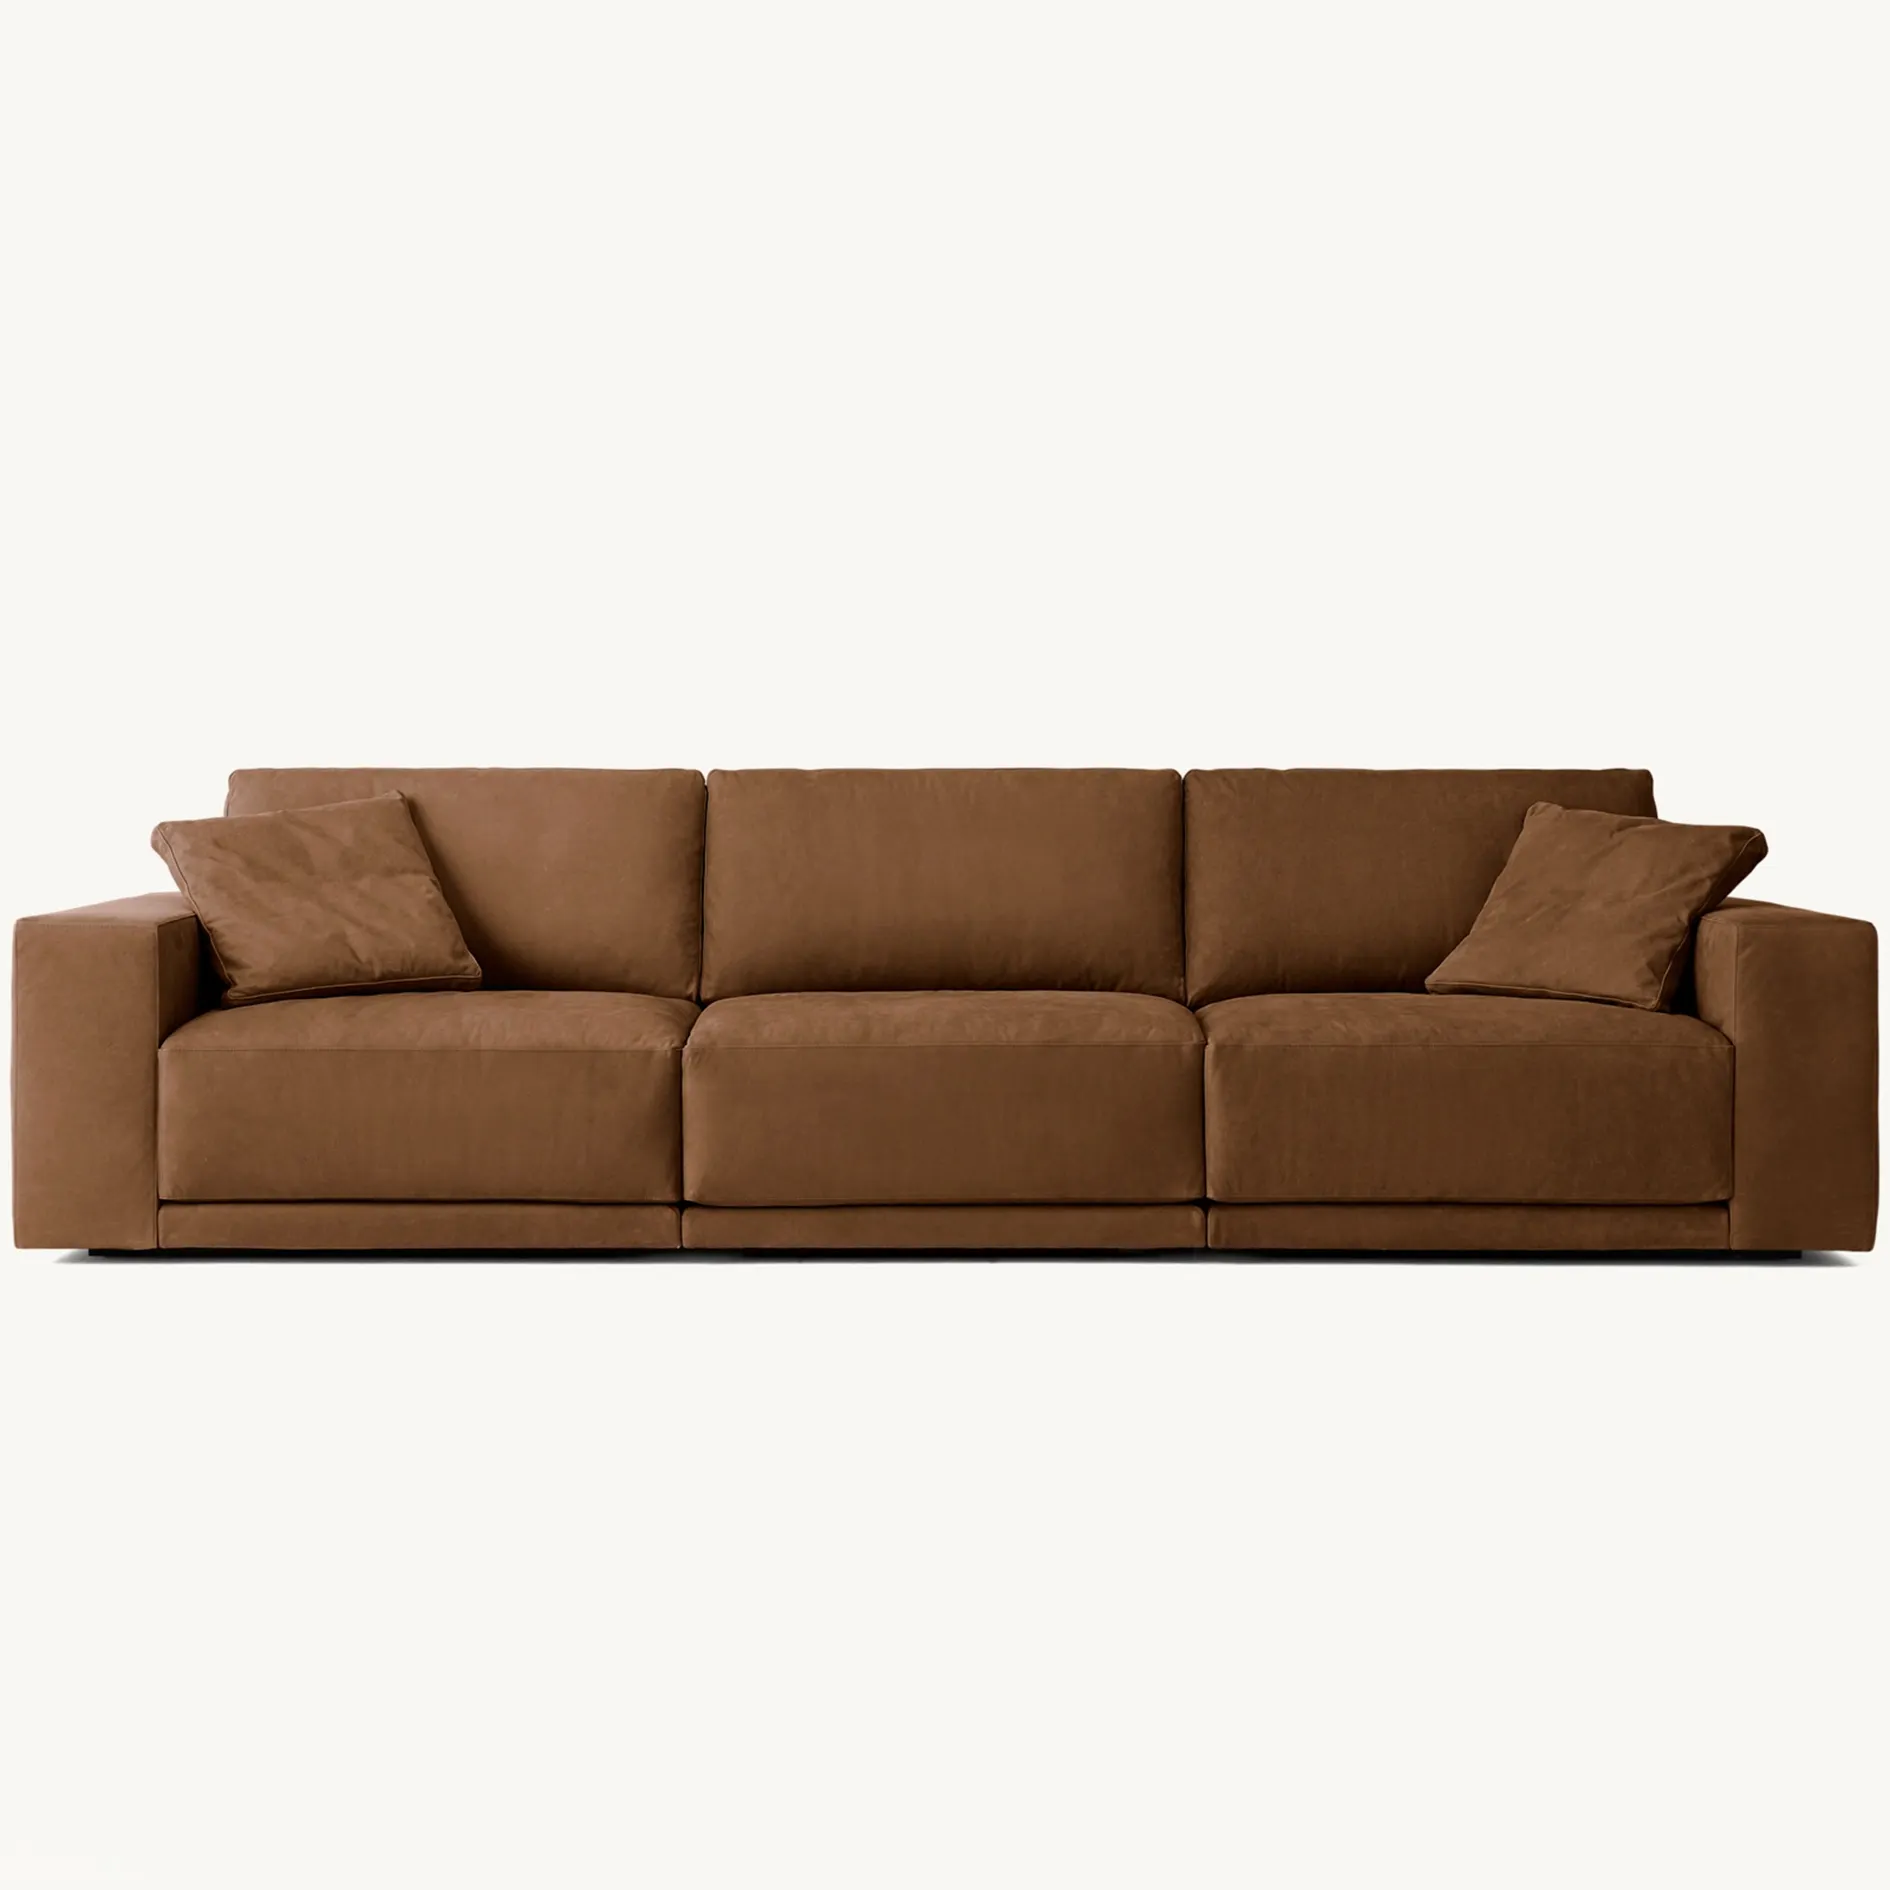 Oturma odası yeni tasarım salon mobilya seti kadife kumaş lüks modern kanepe